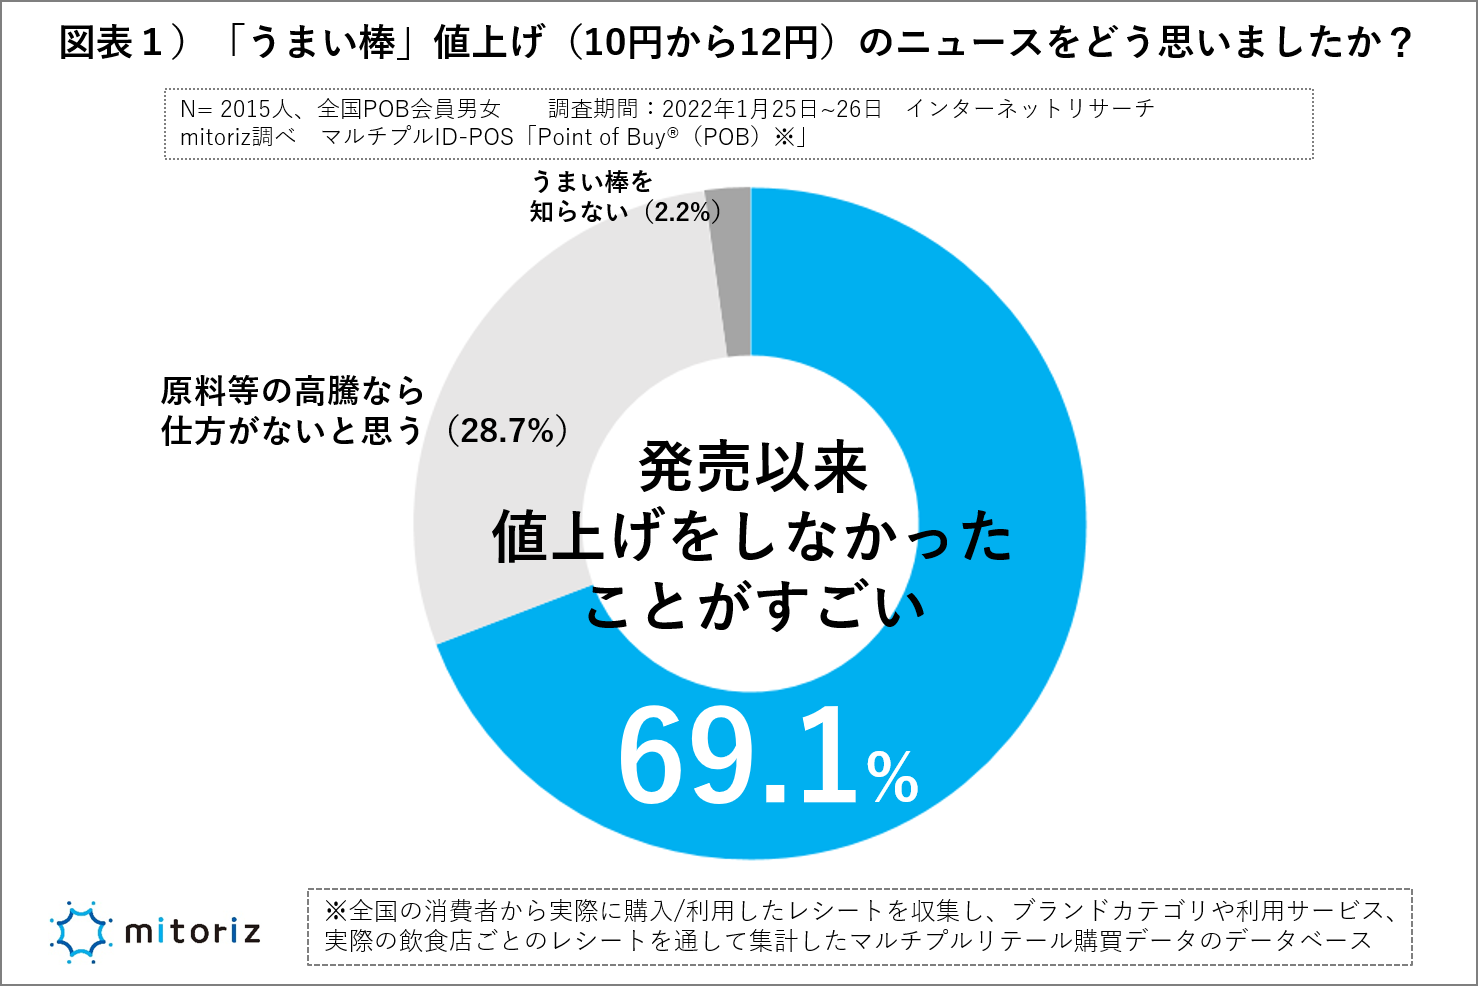 うまい棒値上げに「圧倒的支持」 7割「これまで値上げしなかったことがすごい」 - SankeiBiz（サンケイビズ）：自分を磨く経済情報サイト